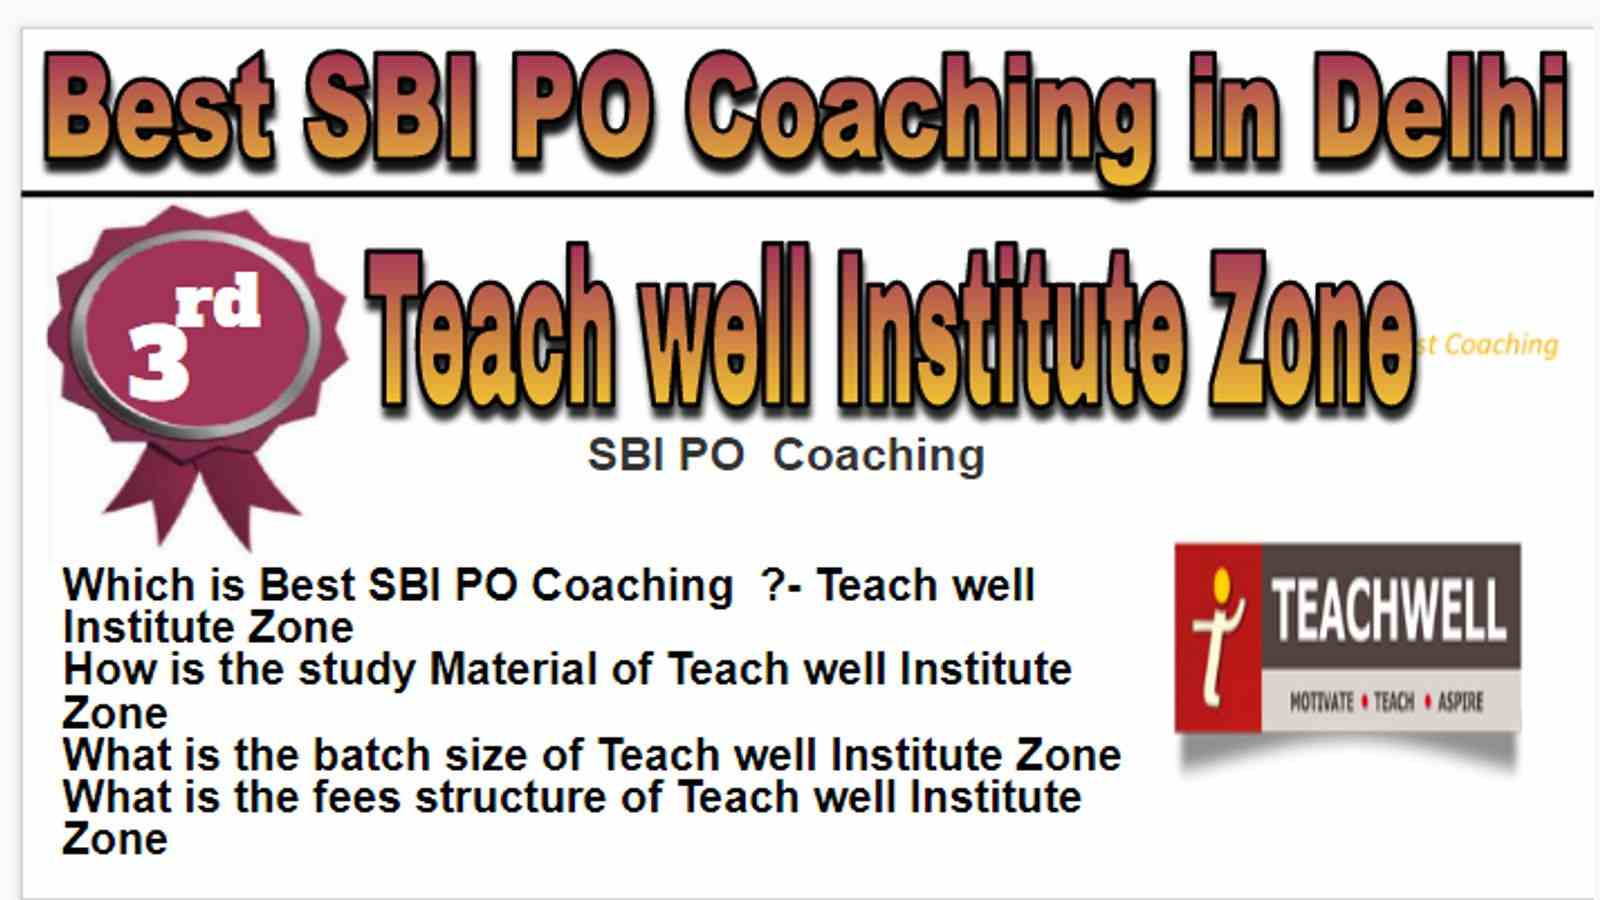 Rank 3 Best 10 SBI PO Coaching in Delhi